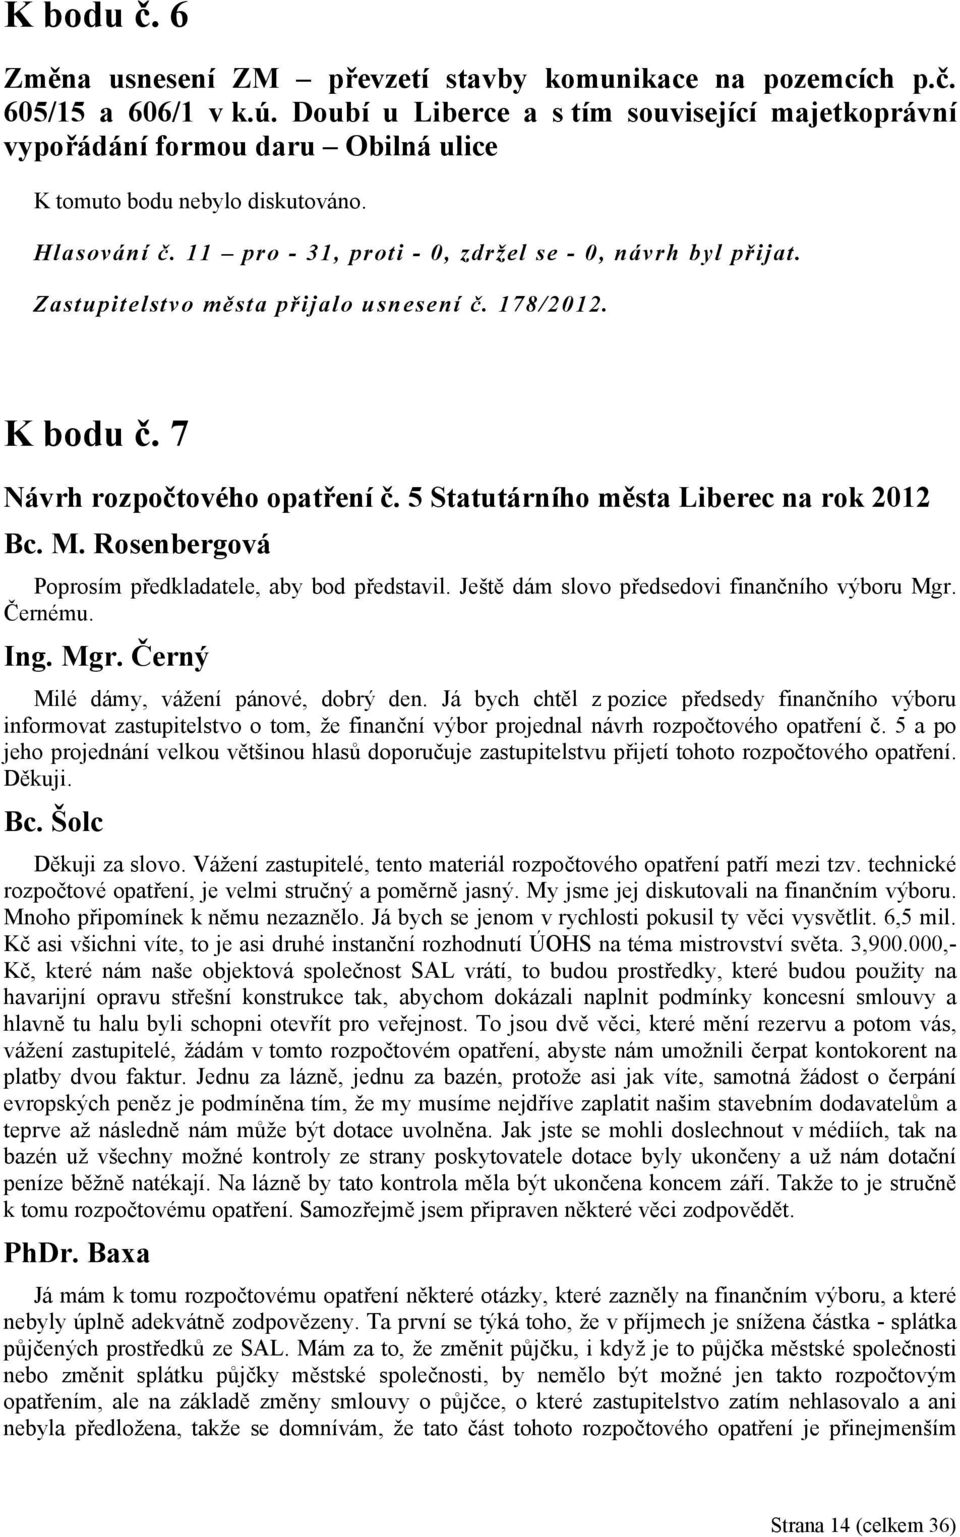 Zastupitelstvo města přijalo usnesení č. 178/2012. K bodu č. 7 Návrh rozpočtového opatření č. 5 Statutárního města Liberec na rok 2012 Poprosím předkladatele, aby bod představil.